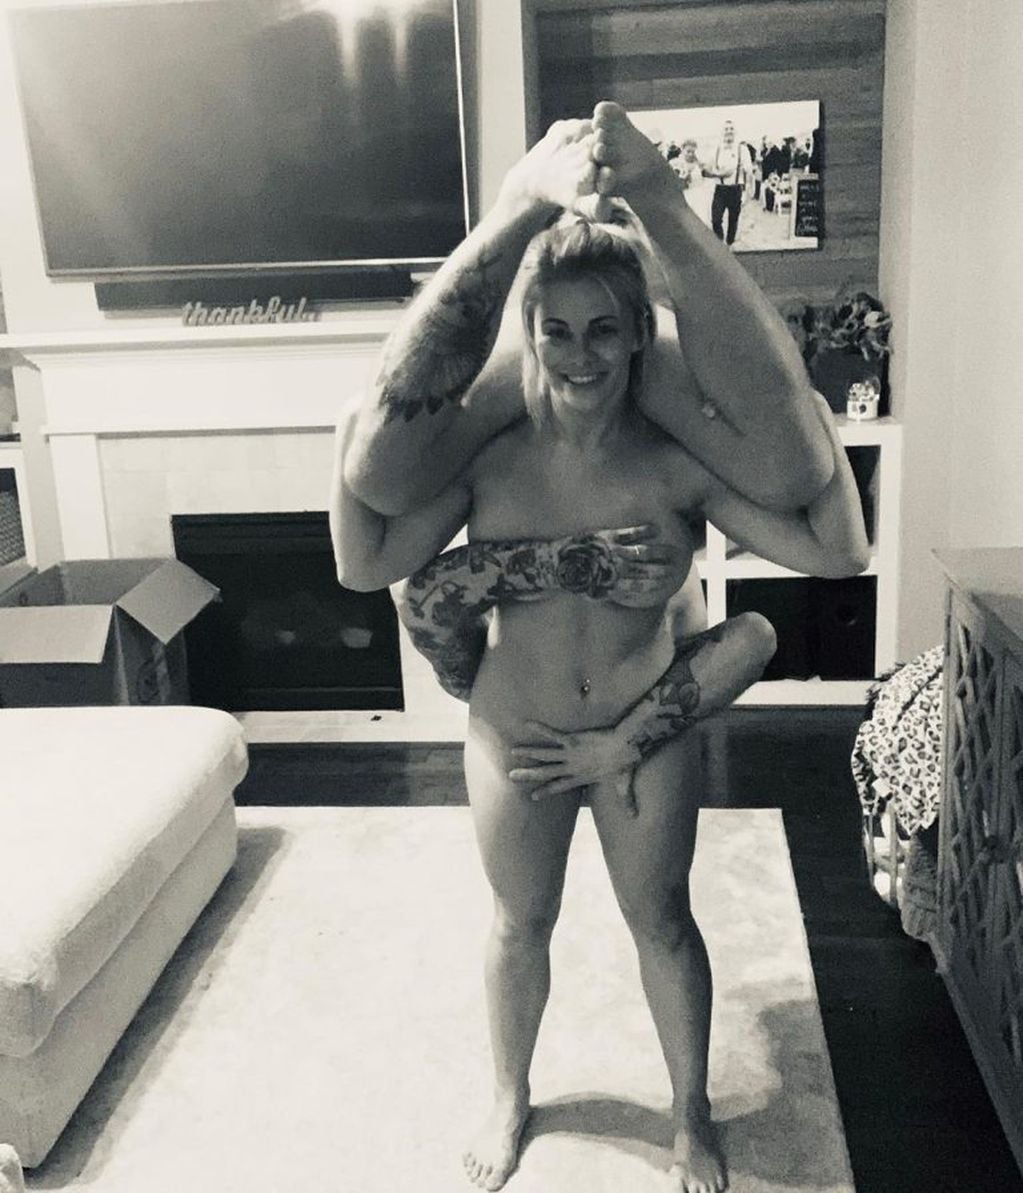 Paige VanZant y Austin Vanderford, la pareja que entrena desnuda (Foto: Instagram)